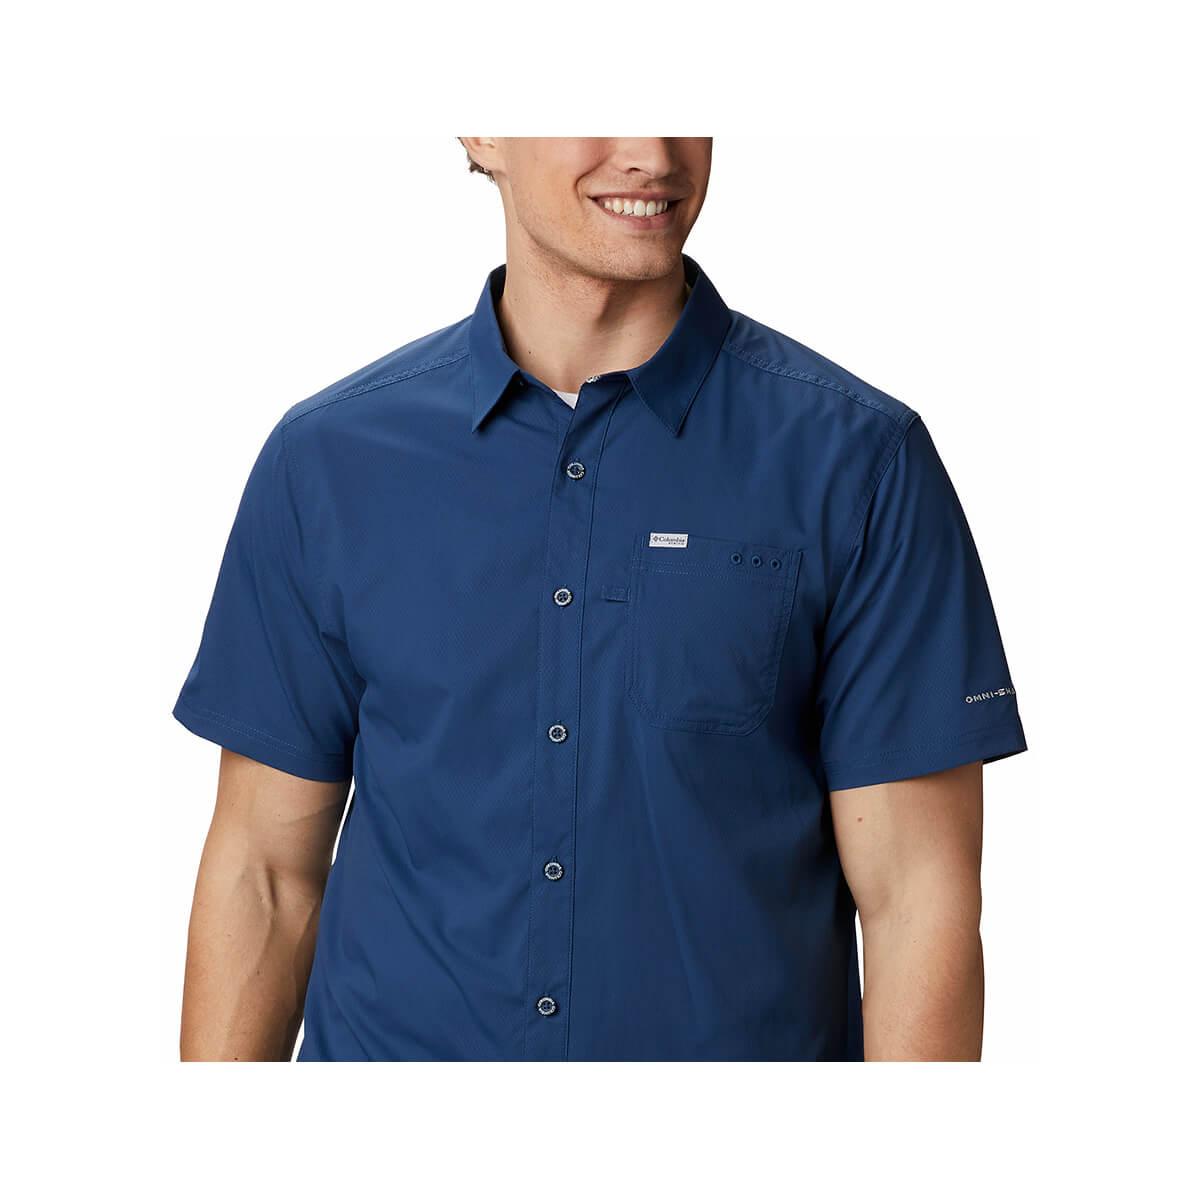  Men's Slack Tide Camp Short Sleeve Button Up Shirt